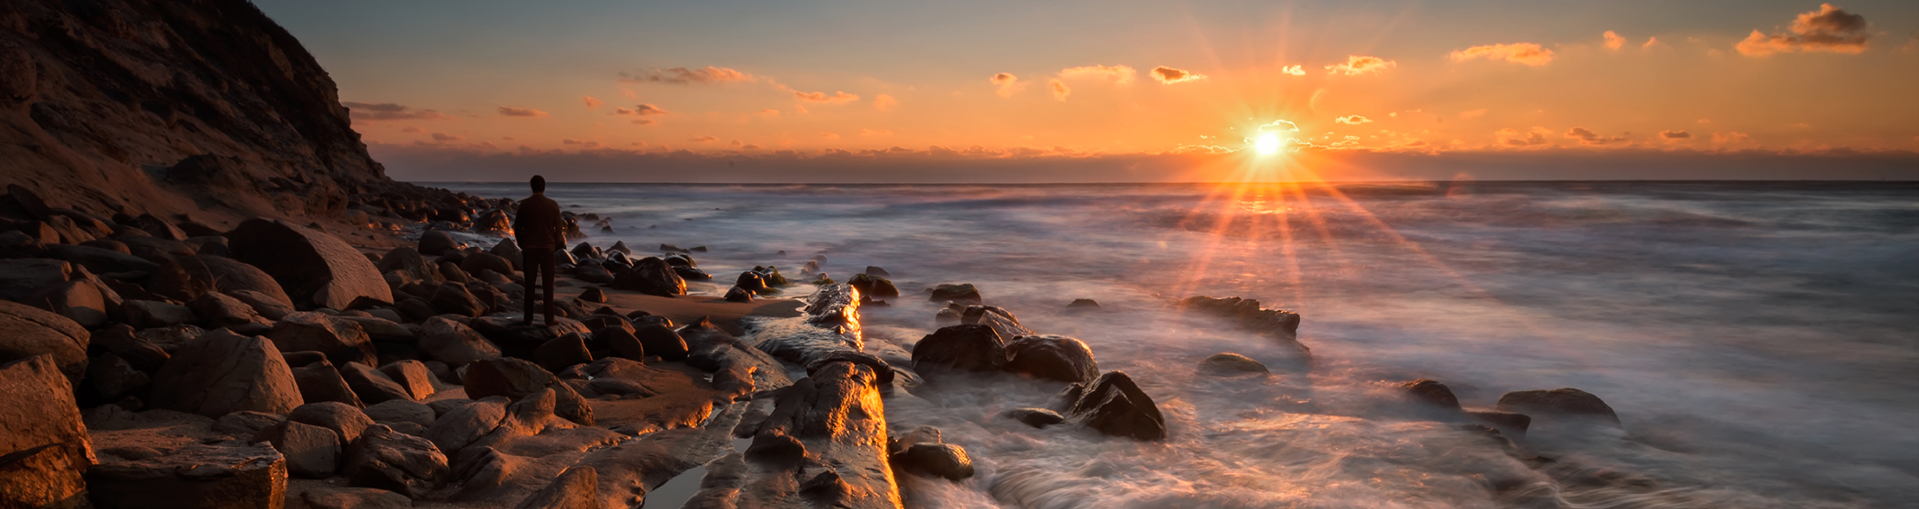 Meeresklippen mit Sonnenaufgang